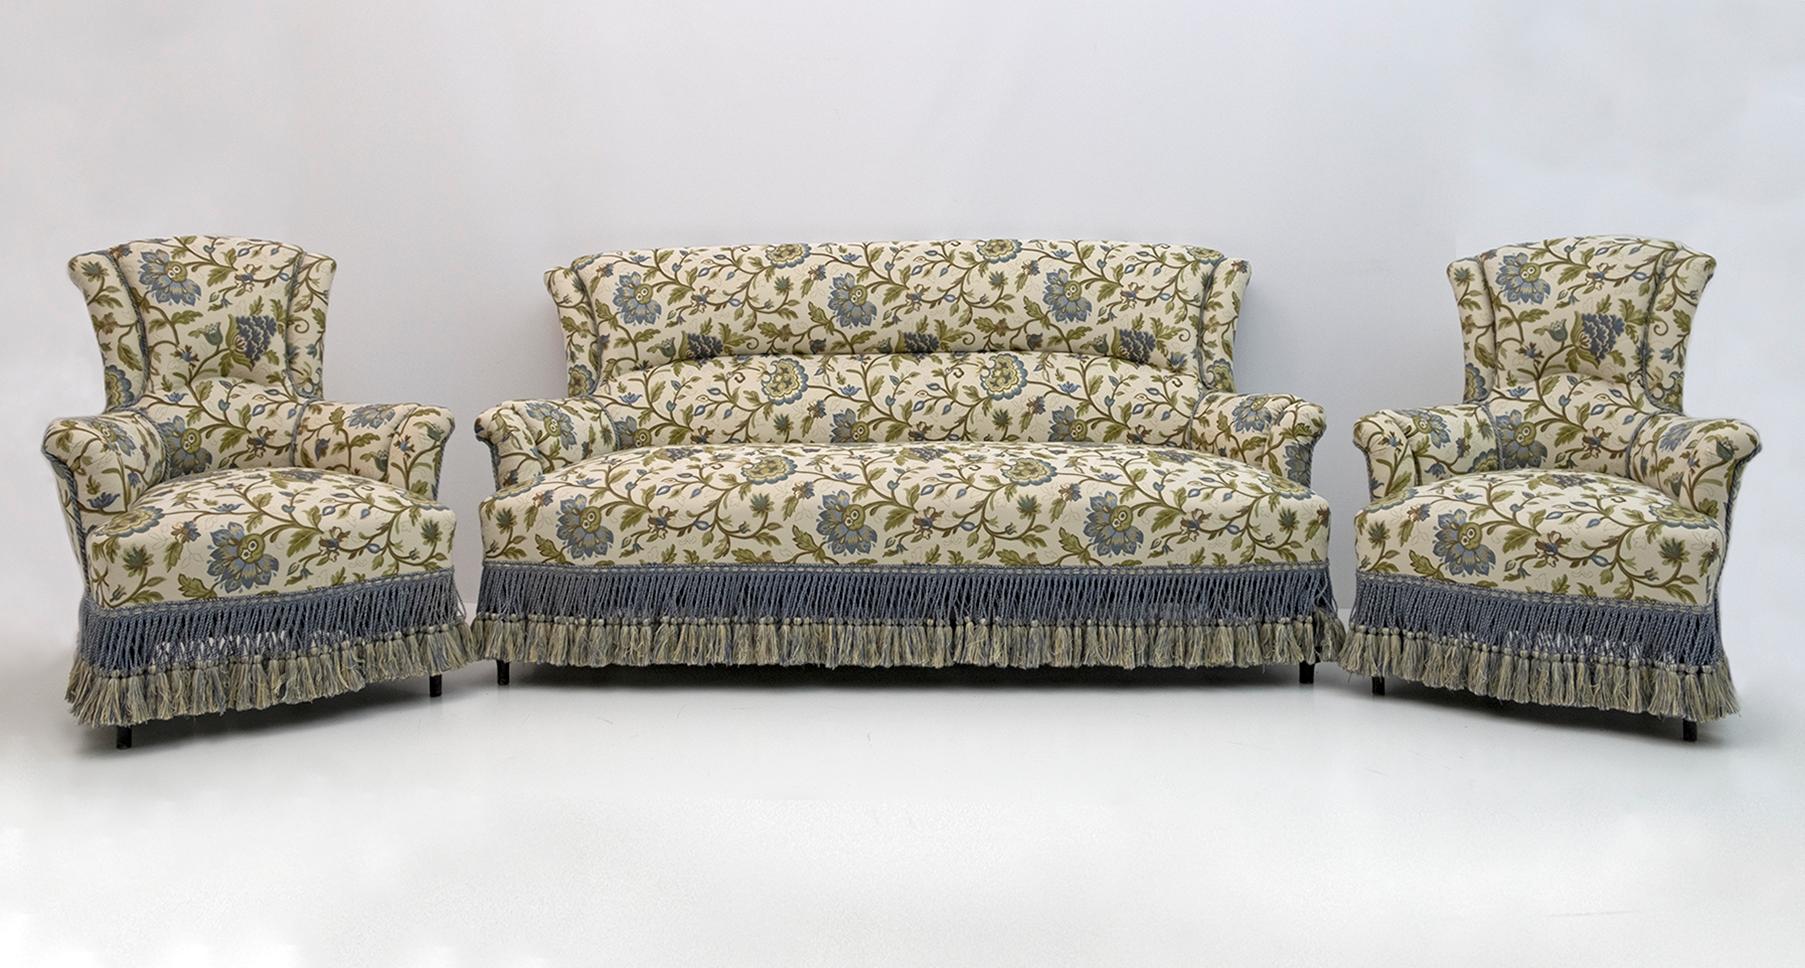 Canapé et deux fauteuils français du XIXe siècle, période Napoléon III. L'ensemble a été restauré et la tapisserie a été remplacée par un magnifique brocart italien. France, 1870.
Les fauteuils mesurent cm :
L73 x P72 x H89 x S42